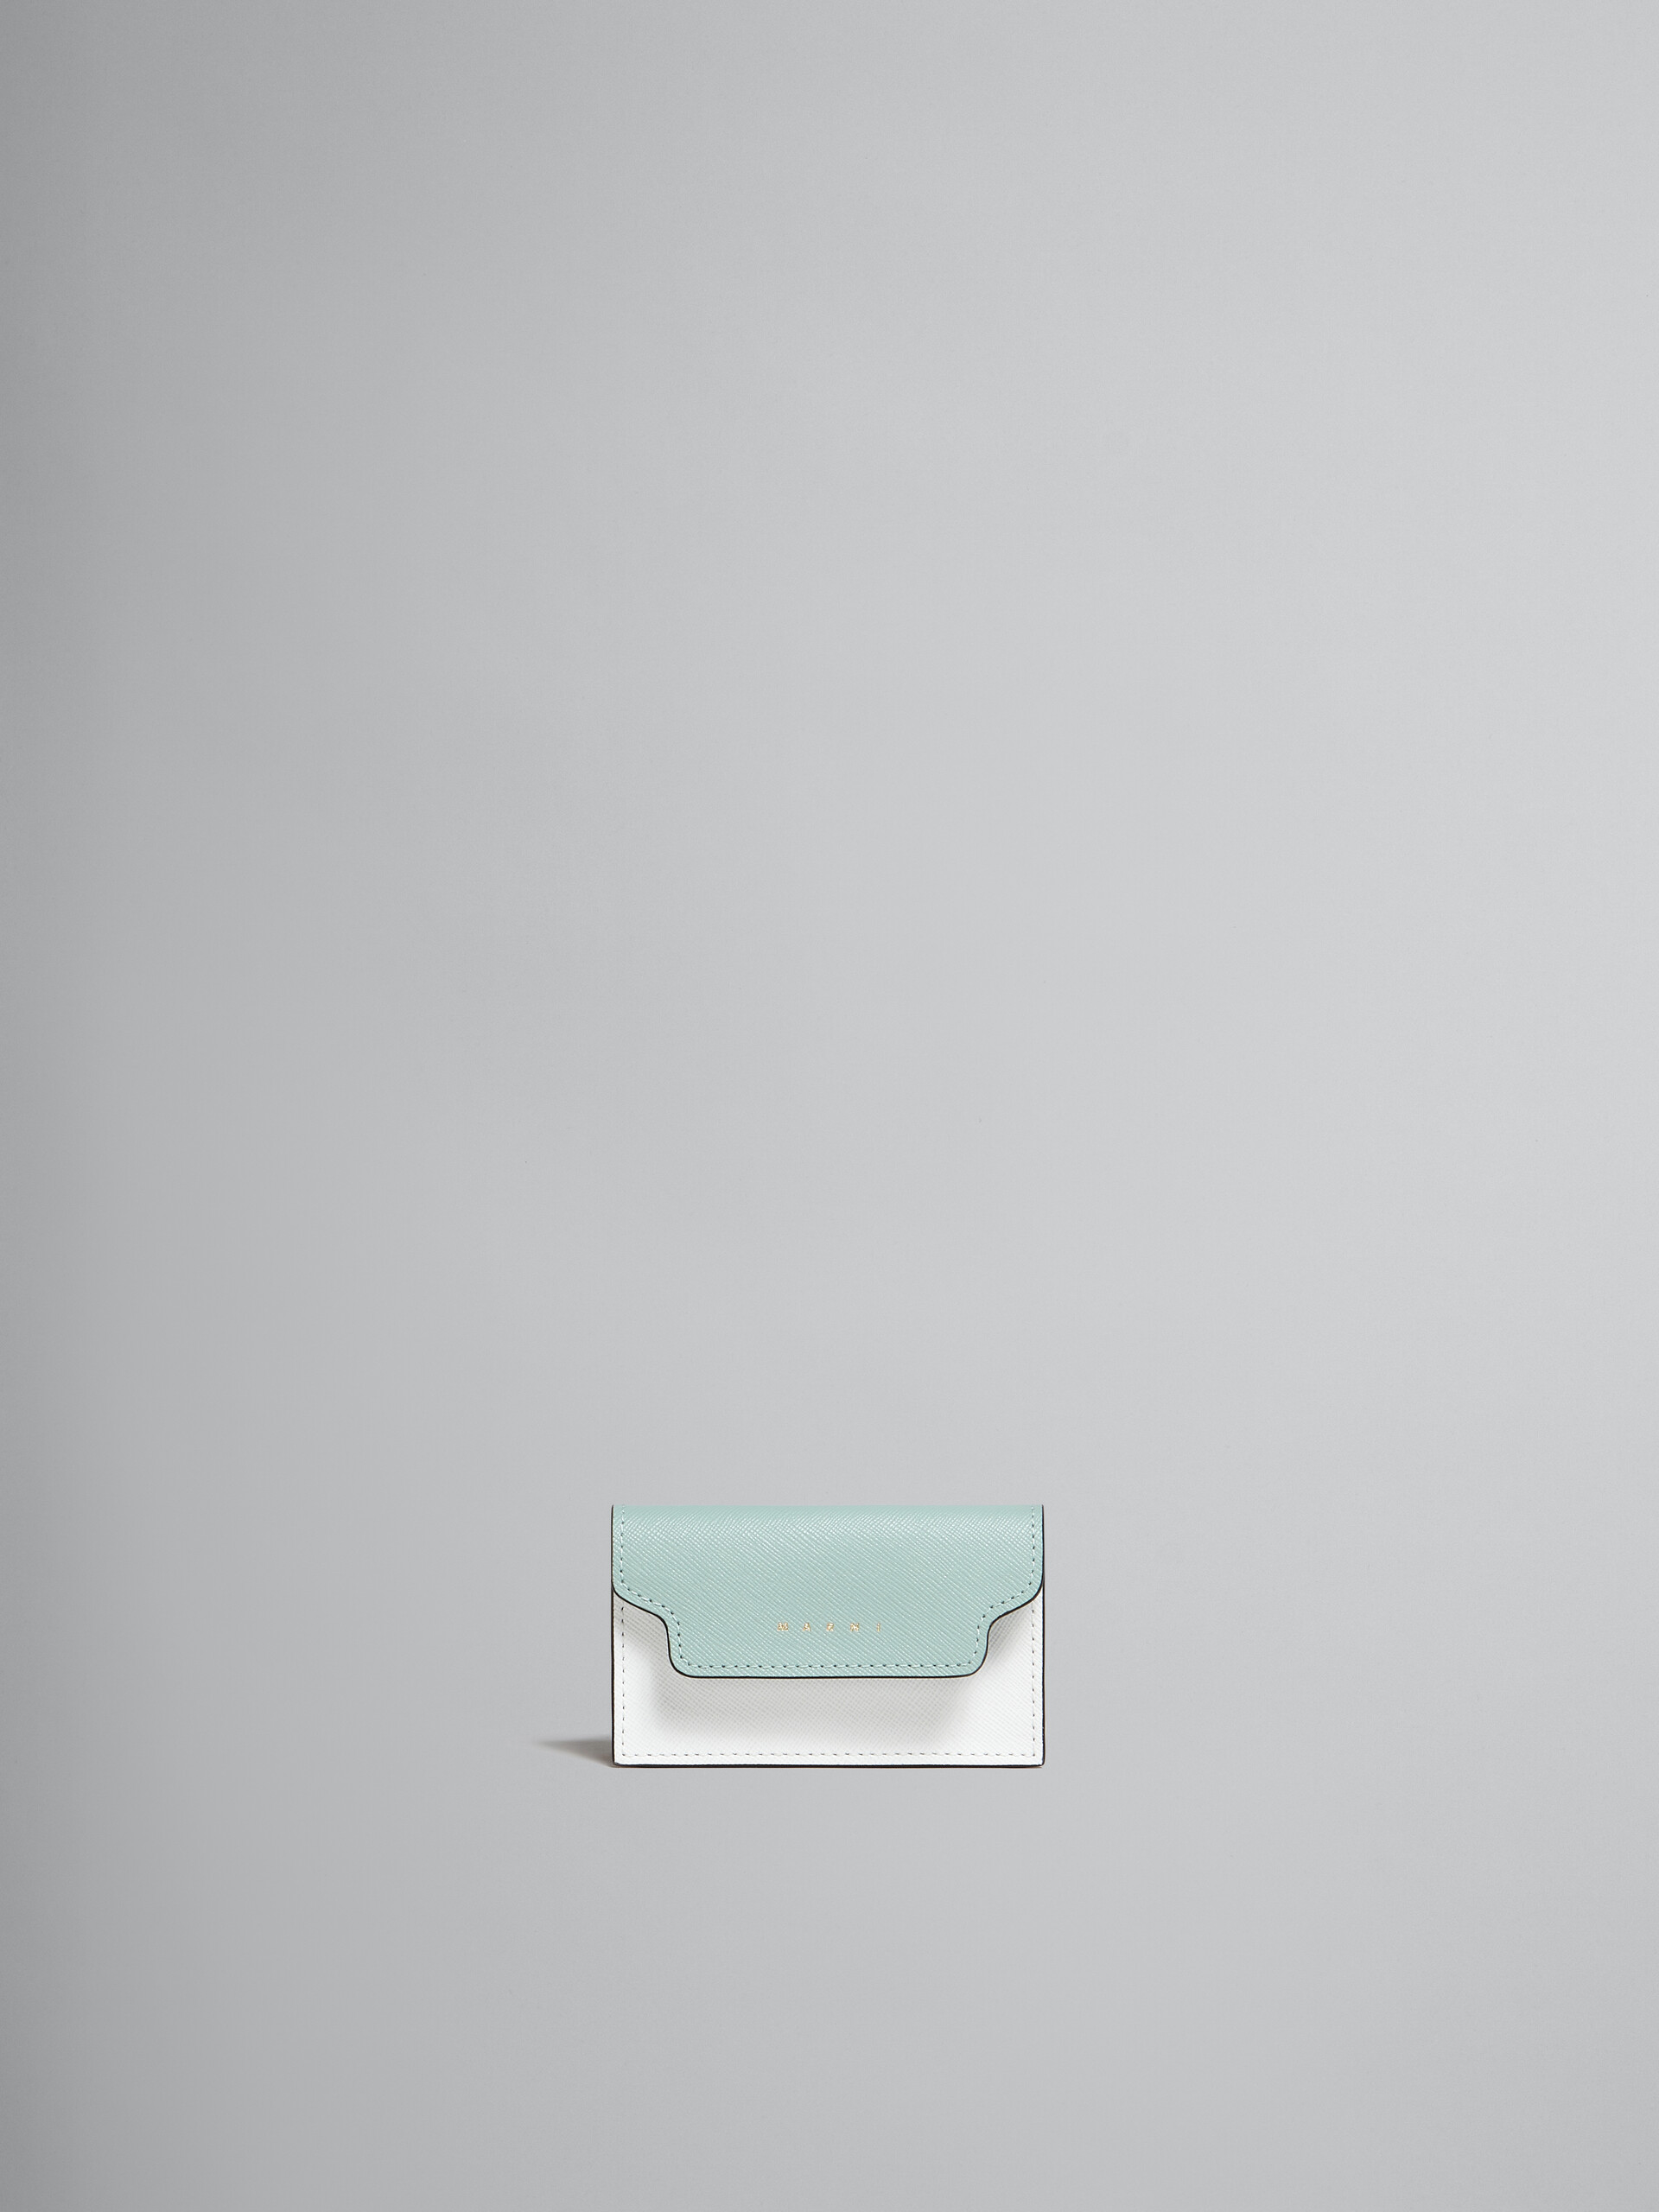 グリーン、ホワイト、ブラウン サフィアーノレザー製ビジネスカードケース - 財布 - Image 1